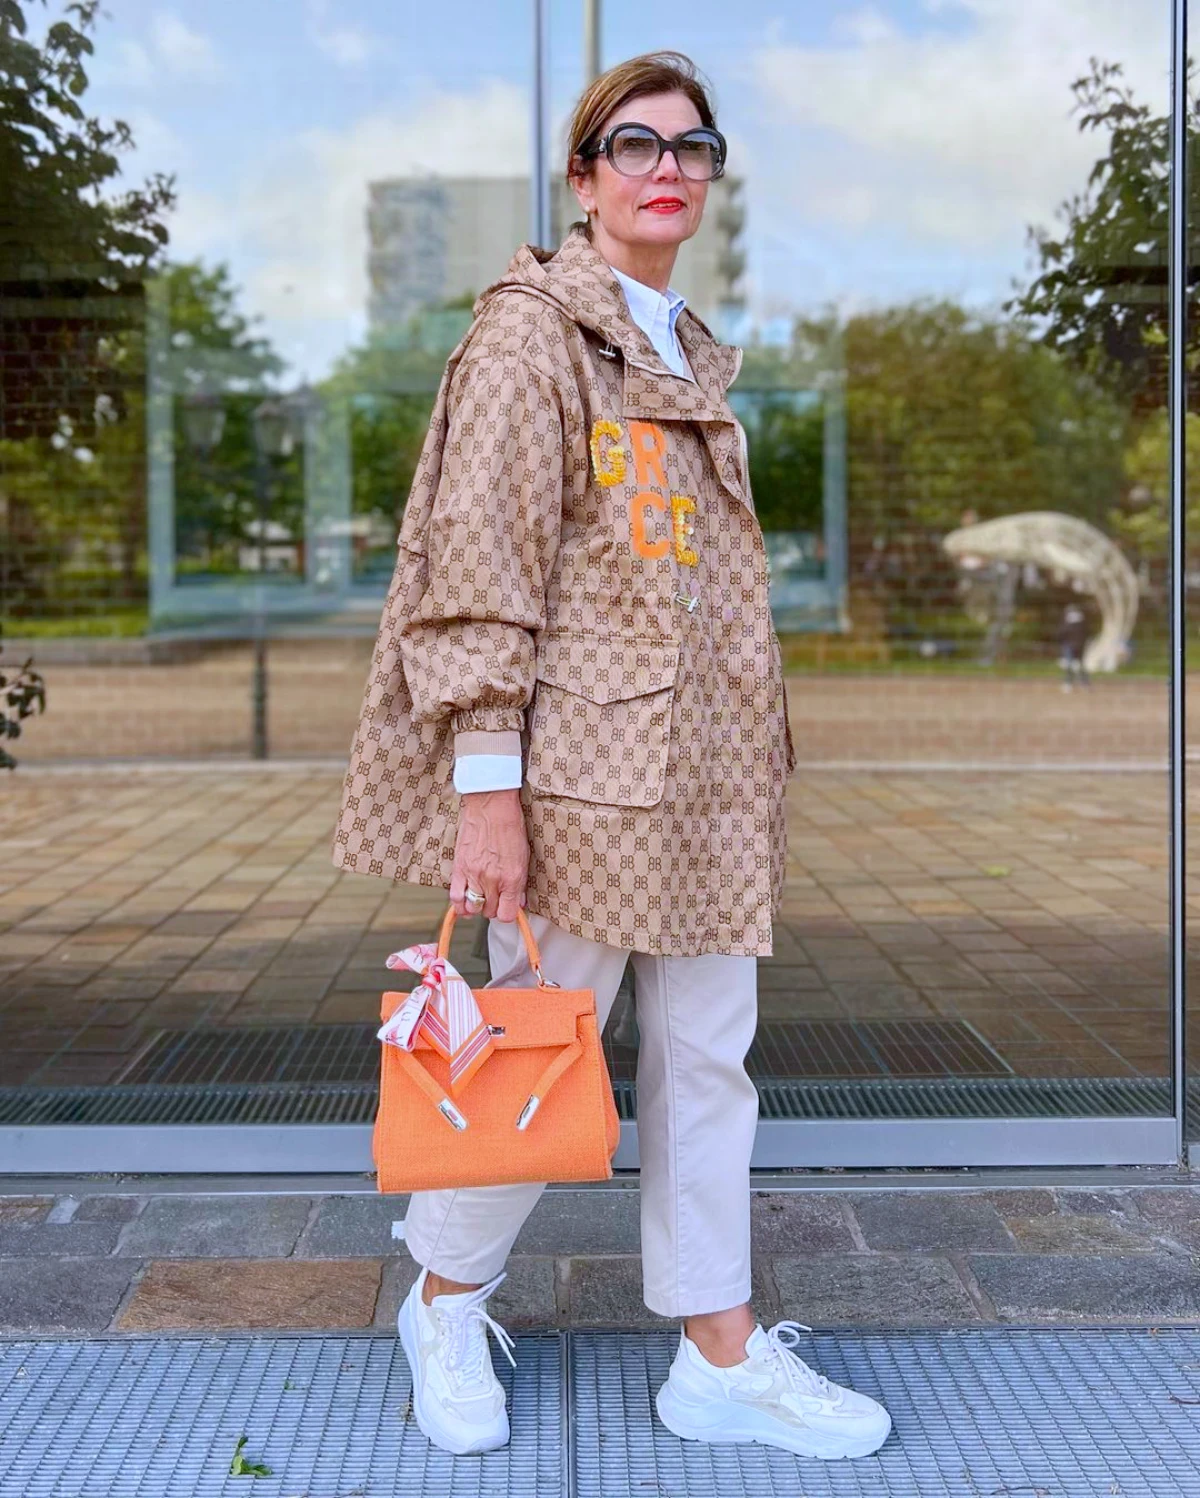 sac orange veste marron baskets blanches tenue femme 50 ans